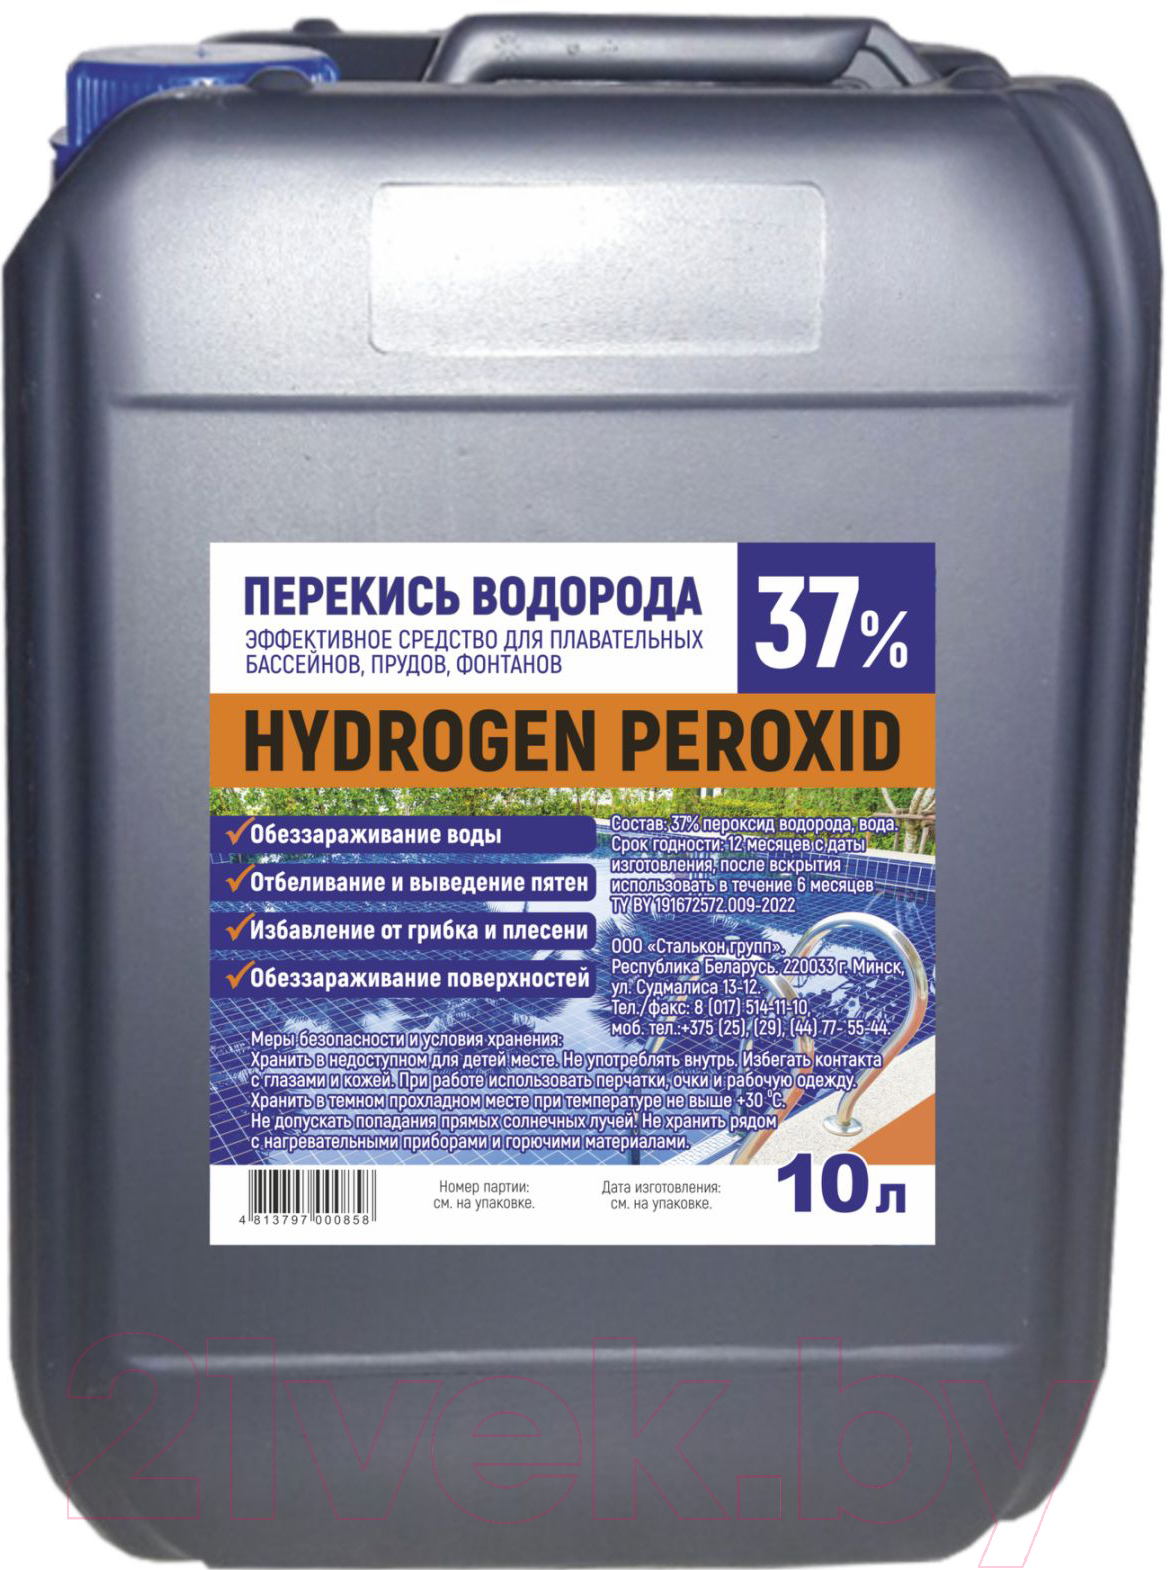 Универсальное чистящее средство Stalkon Перекись водорода техническая 37%